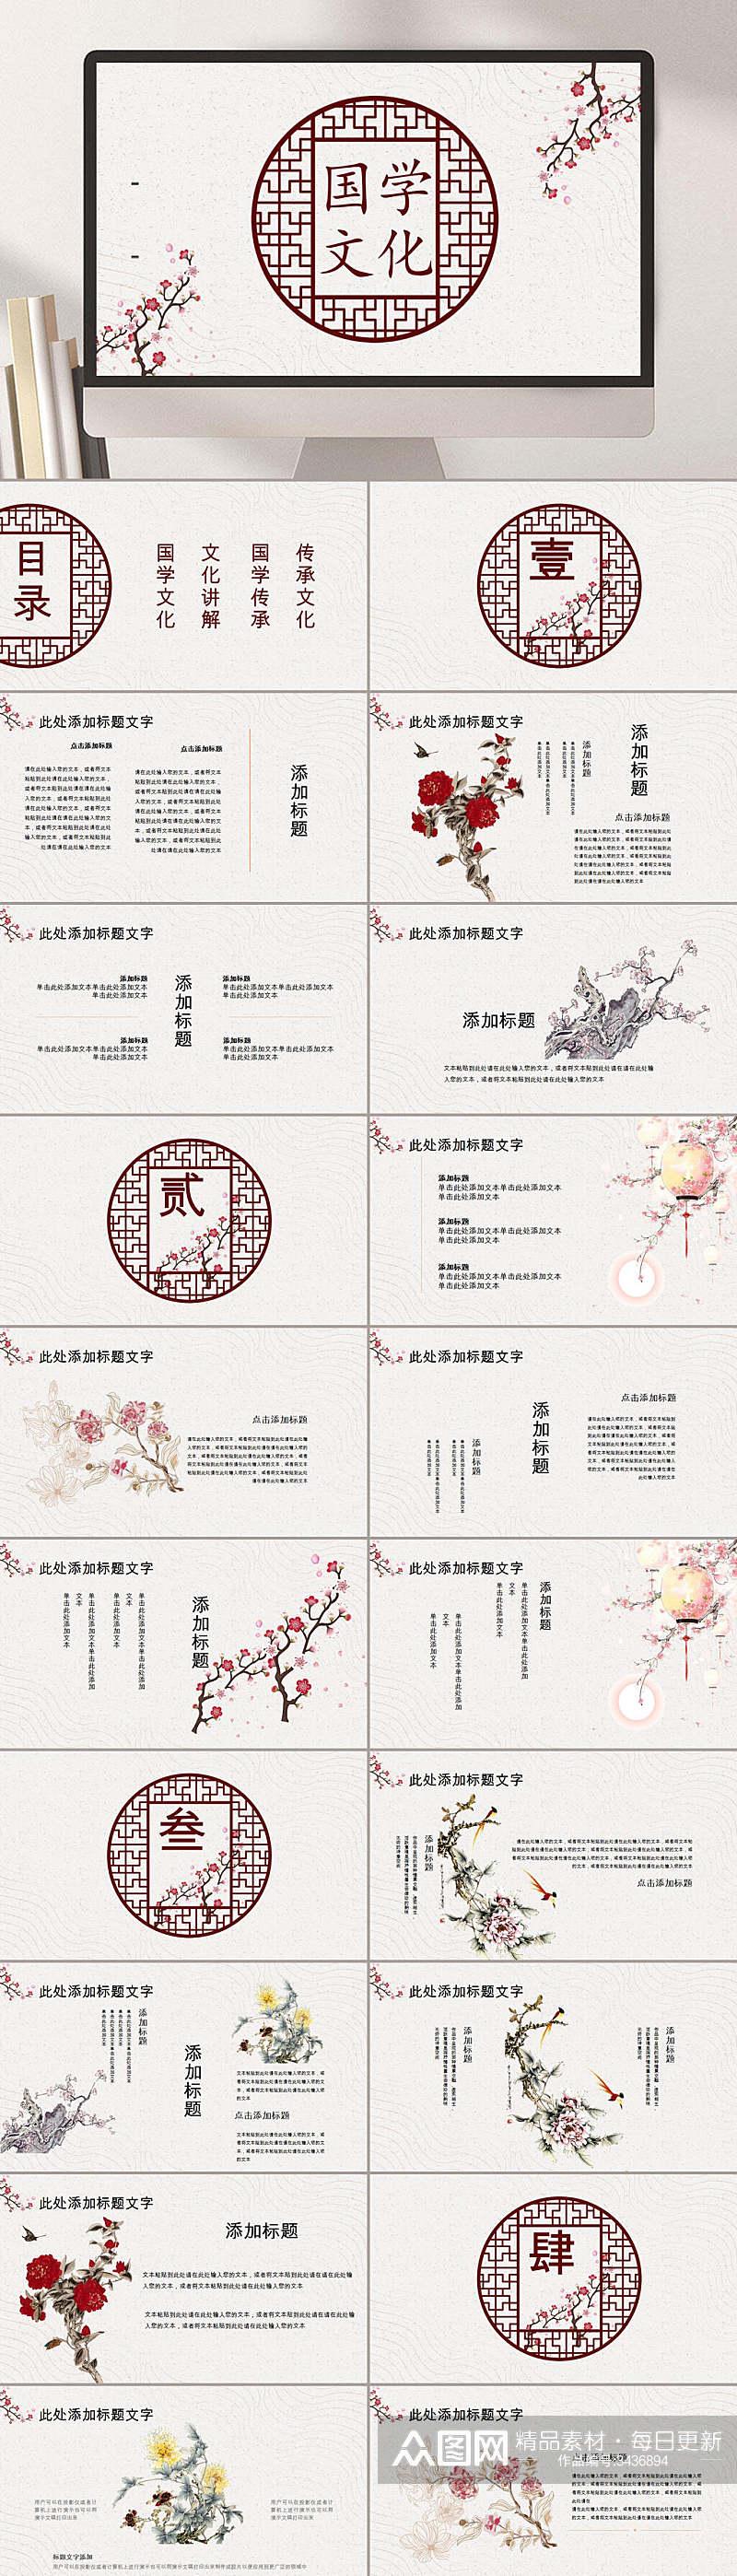 国学文化古典典雅中华文化PPT素材